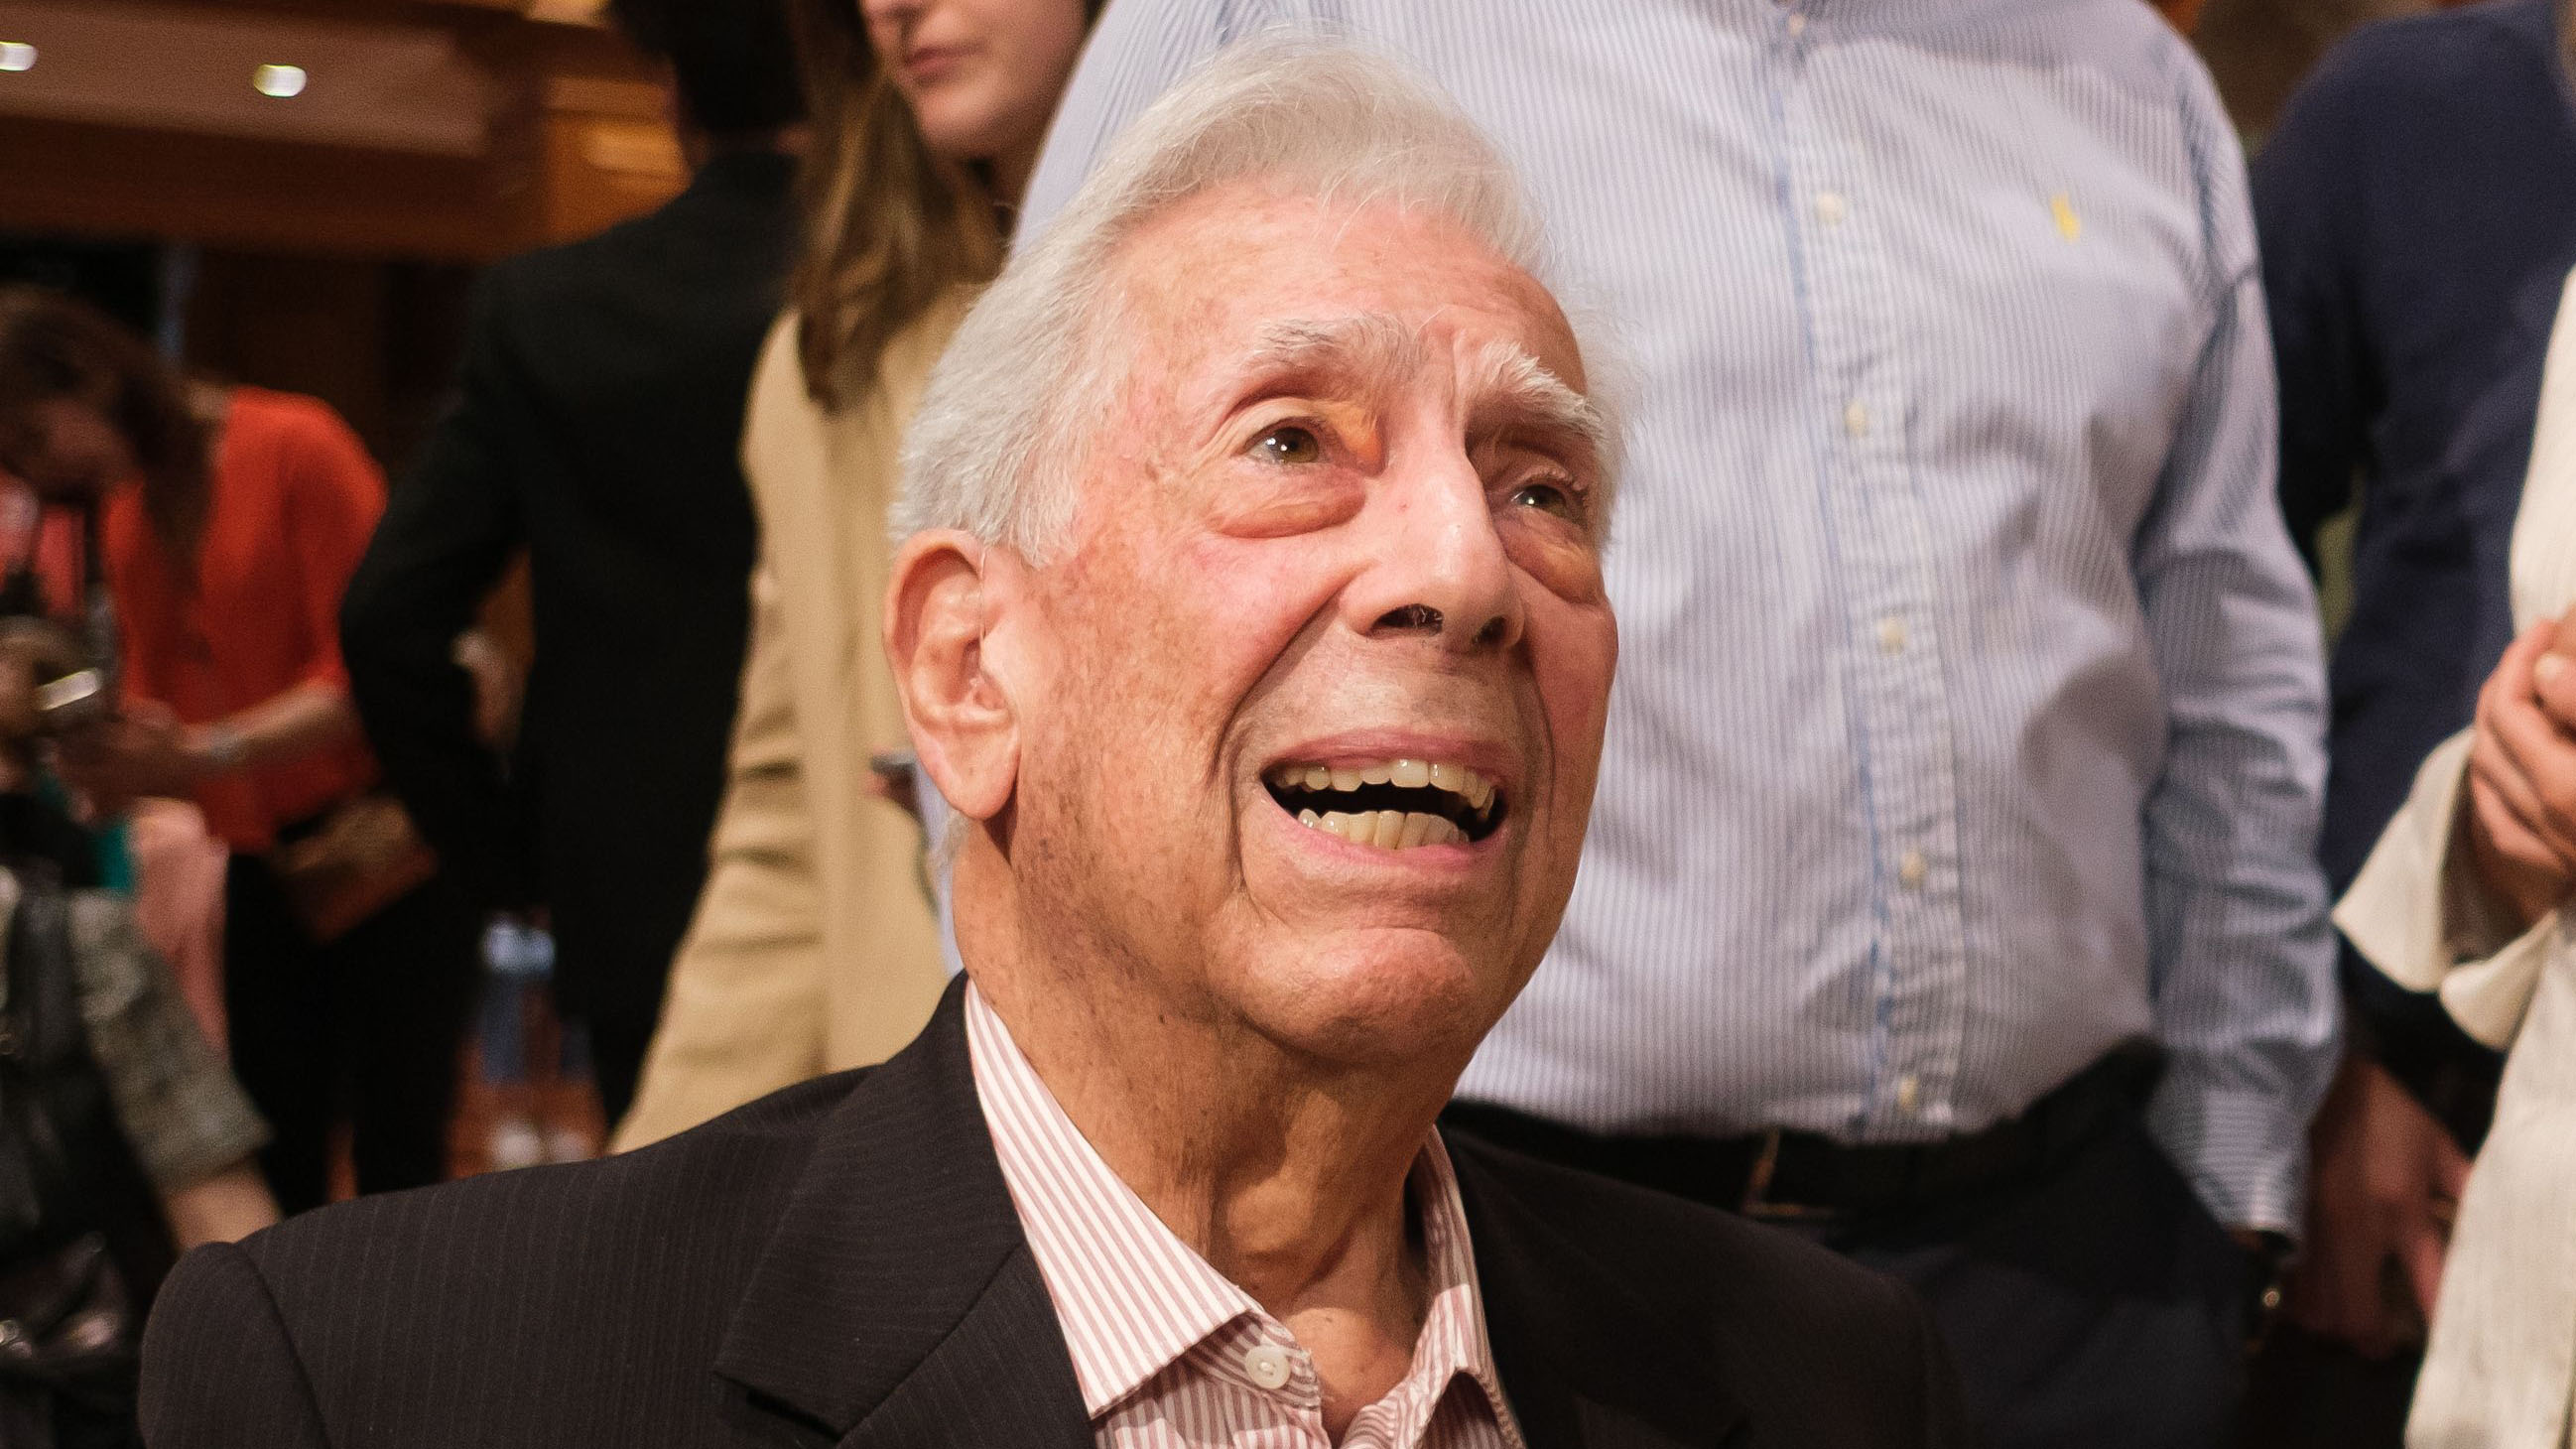 Mario Vargas Llosa sonriendo en una conferencia. (Foto: Gtres)